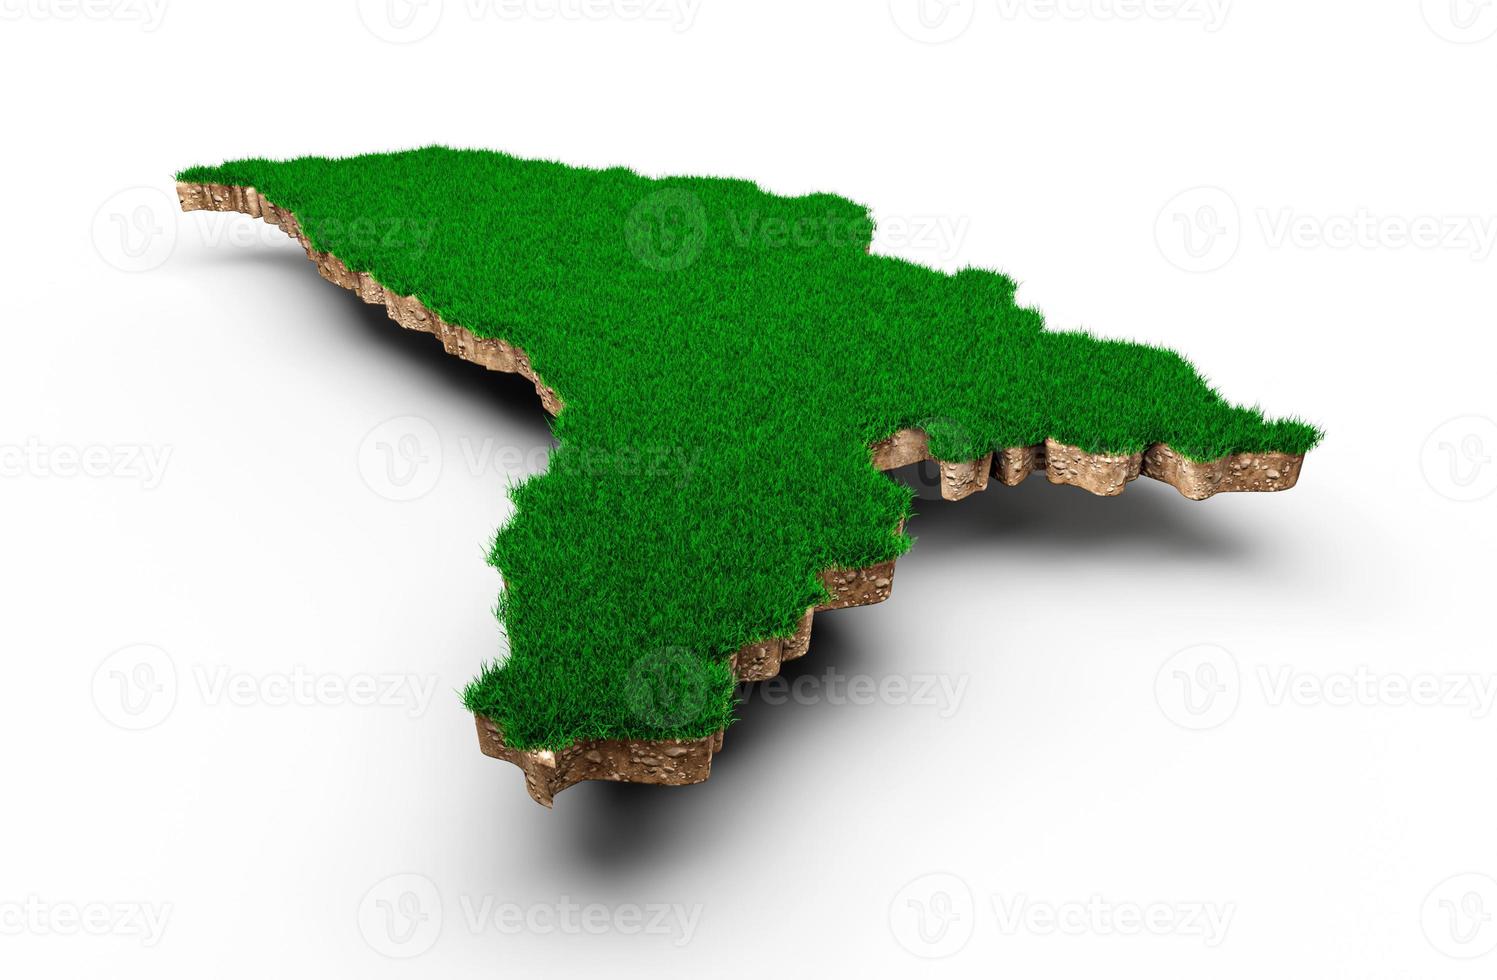 moldavien karta jord mark geologi tvärsnitt med grönt gräs och sten marken textur 3d illustration foto